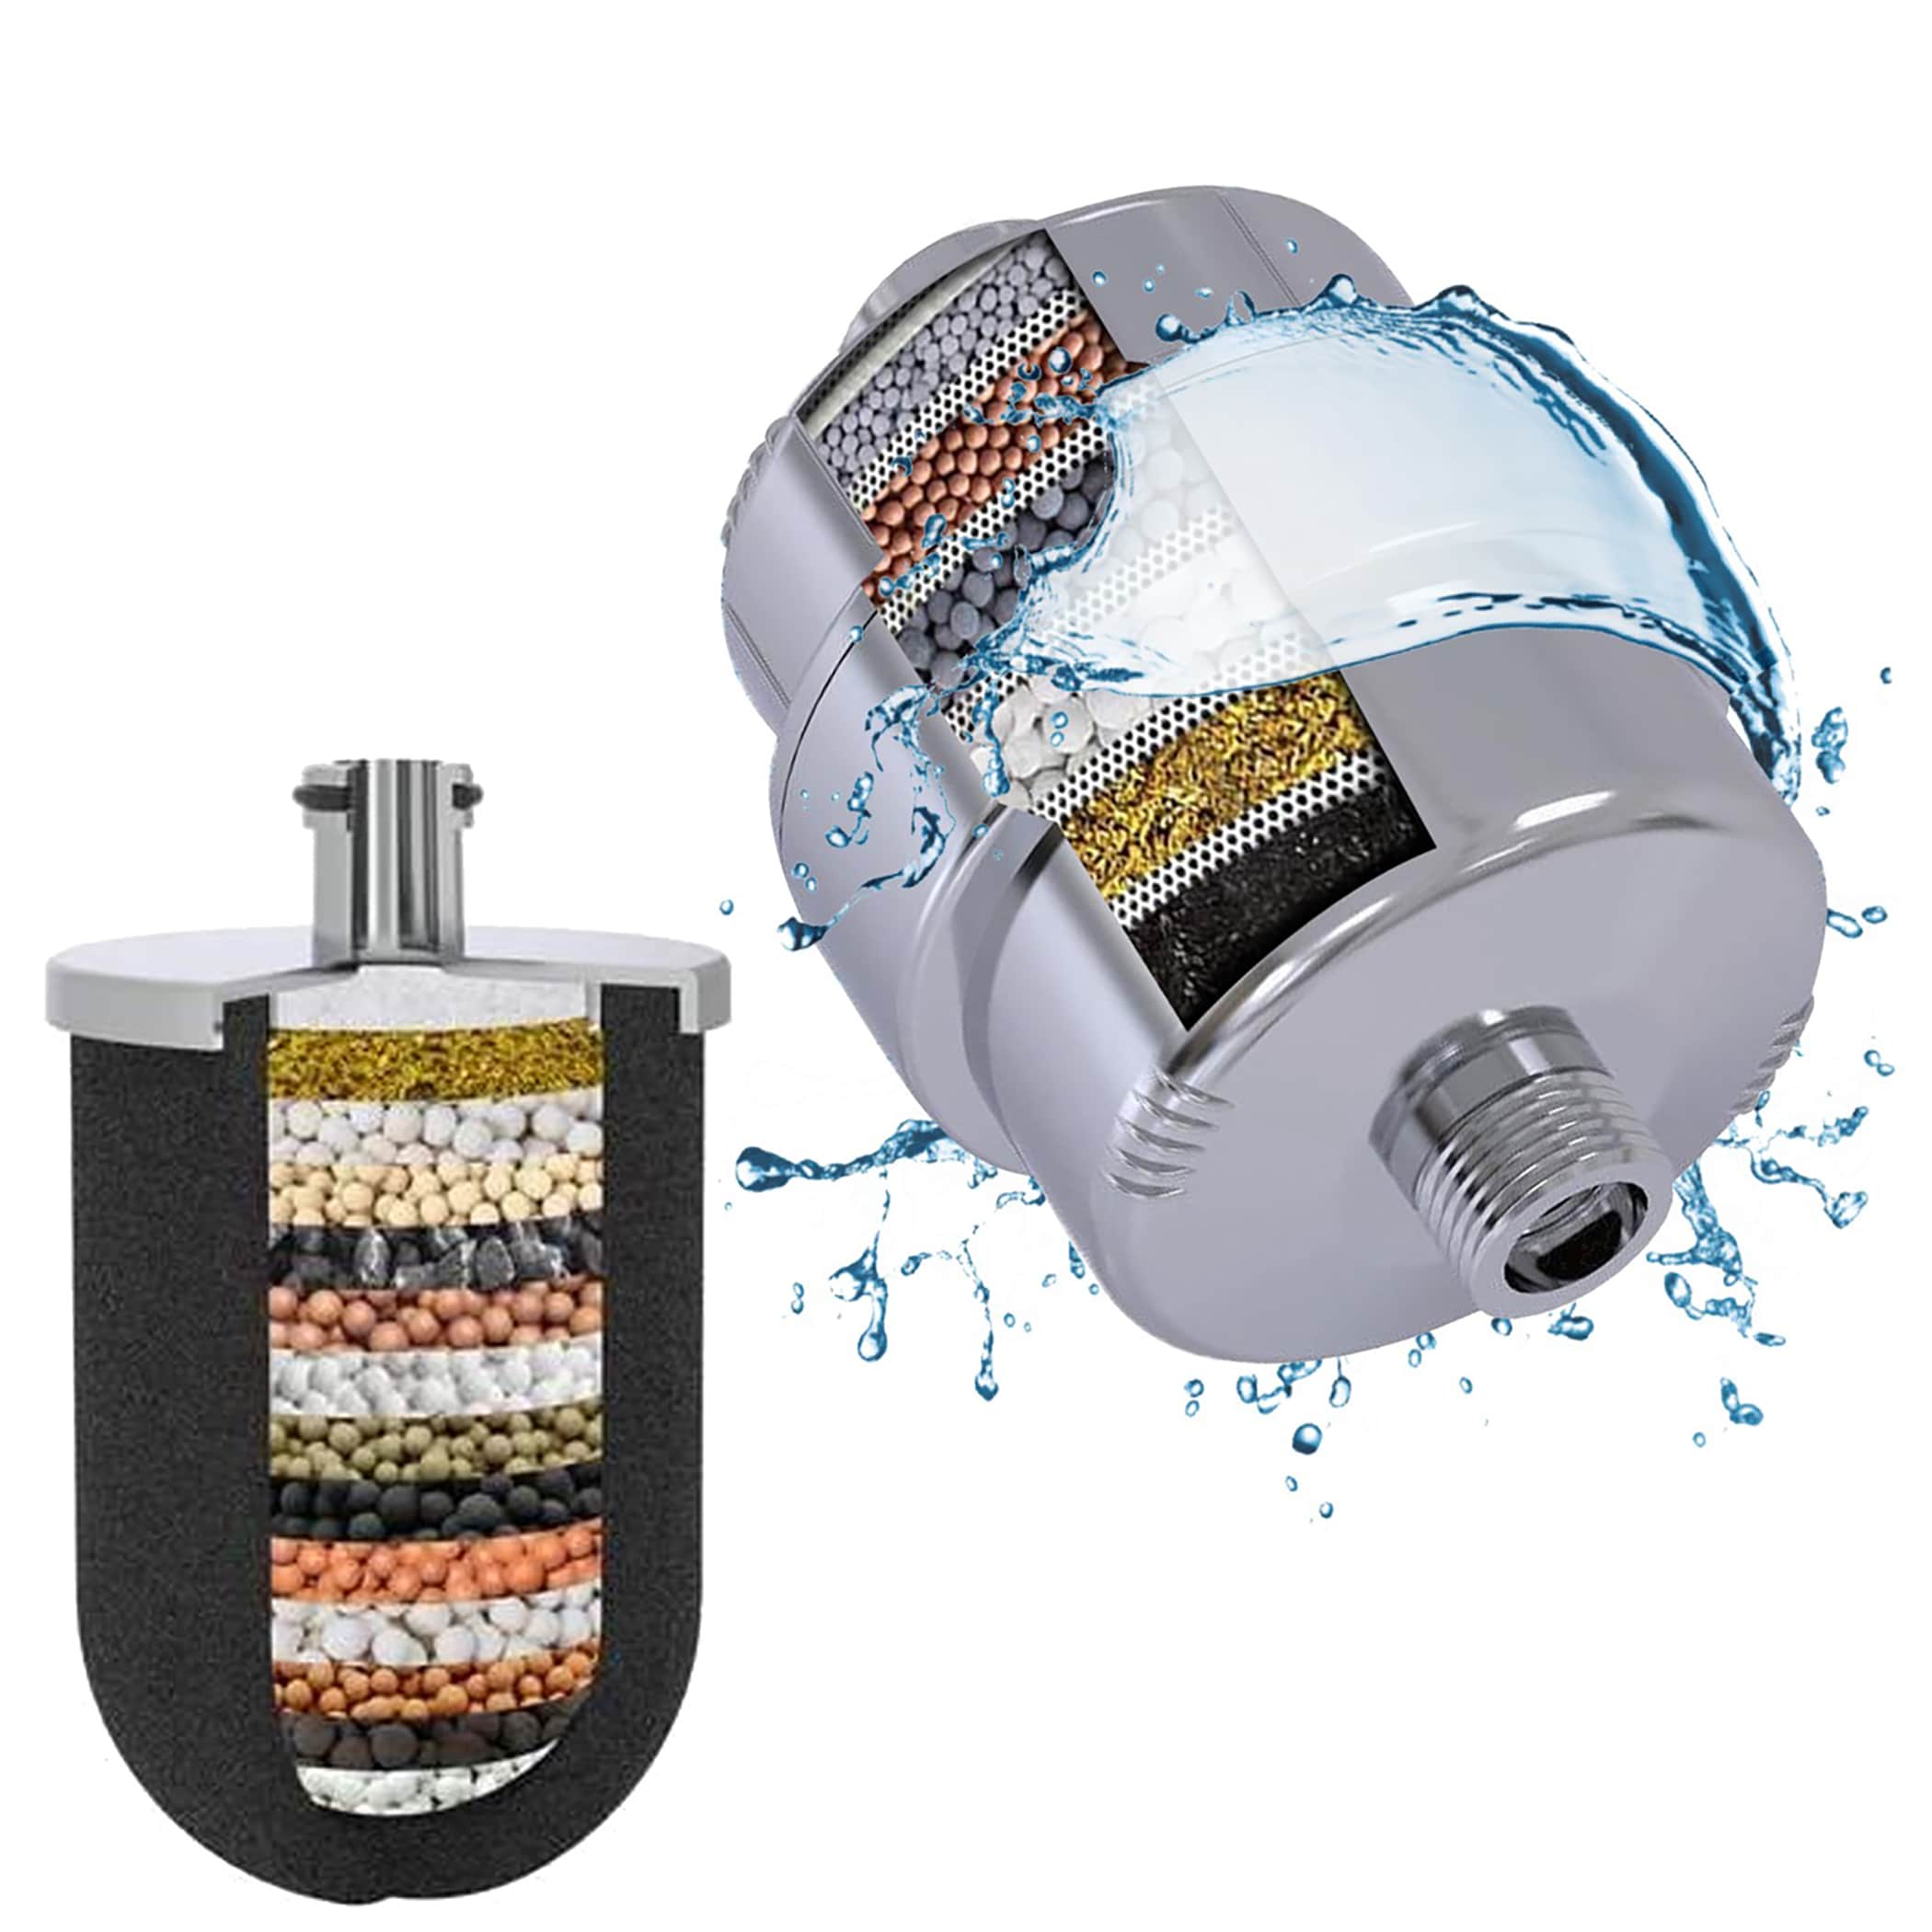 Filtro de ducha Aquasana AQ-4100 shower system